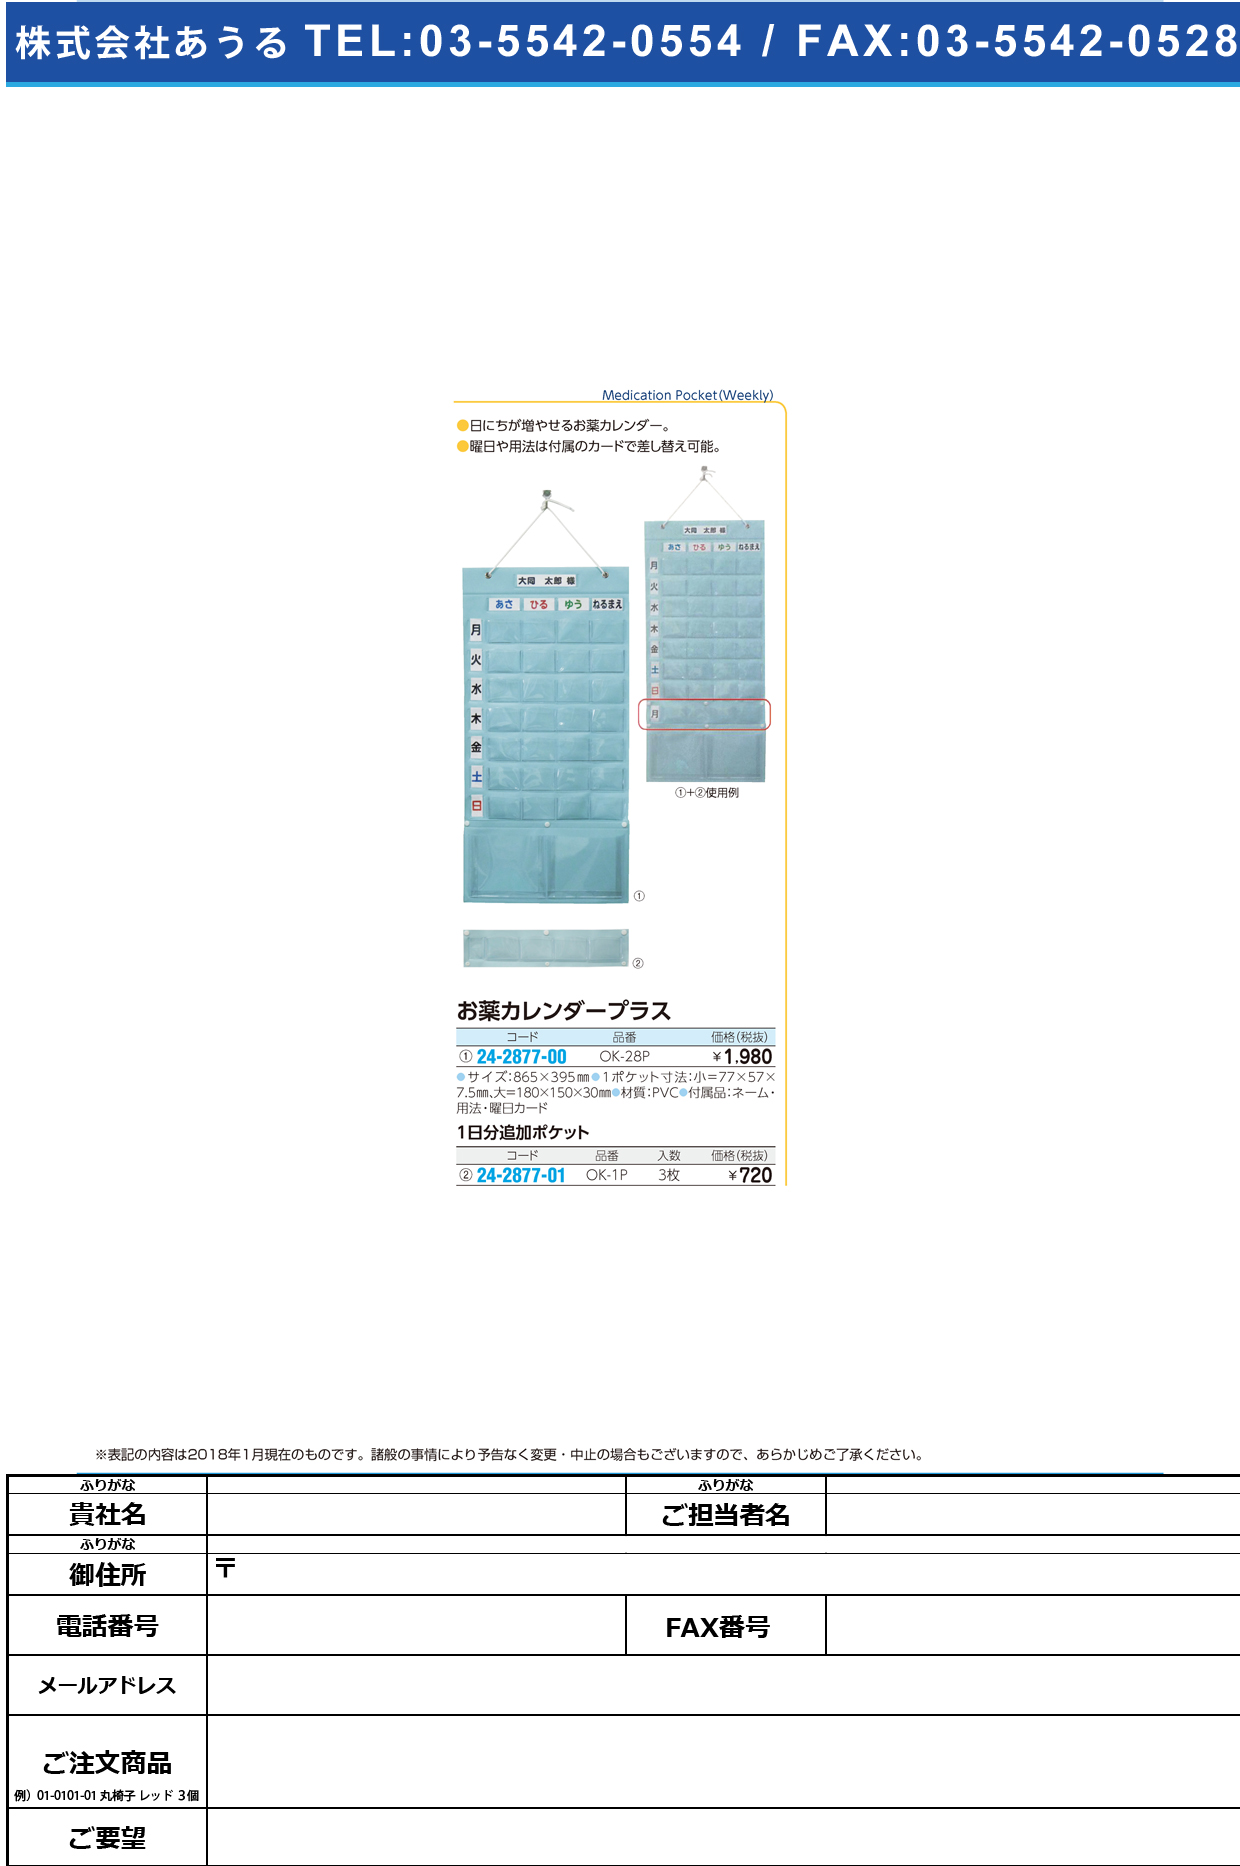 (24-2877-00)お薬カレンダープラス OK-28P ｵｸｽﾘｶﾚﾝﾀﾞｰﾌﾟﾗｽ(大同化工)【1個単位】【2019年カタログ商品】